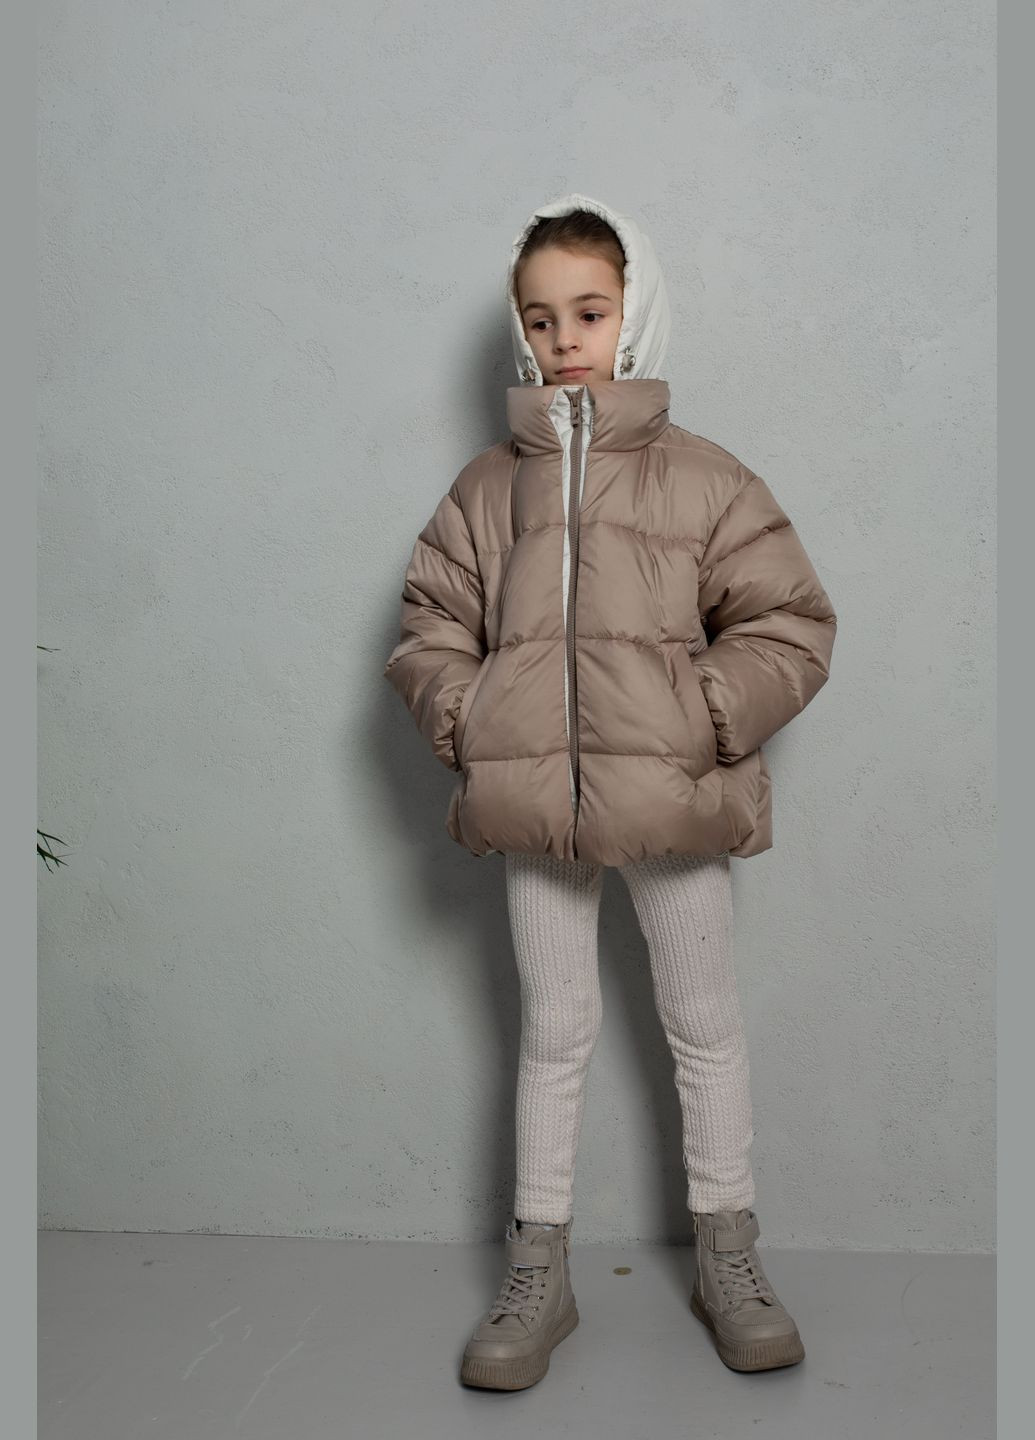 Комбинированная демисезонная куртка мокко-молочны Cvetkov Лола